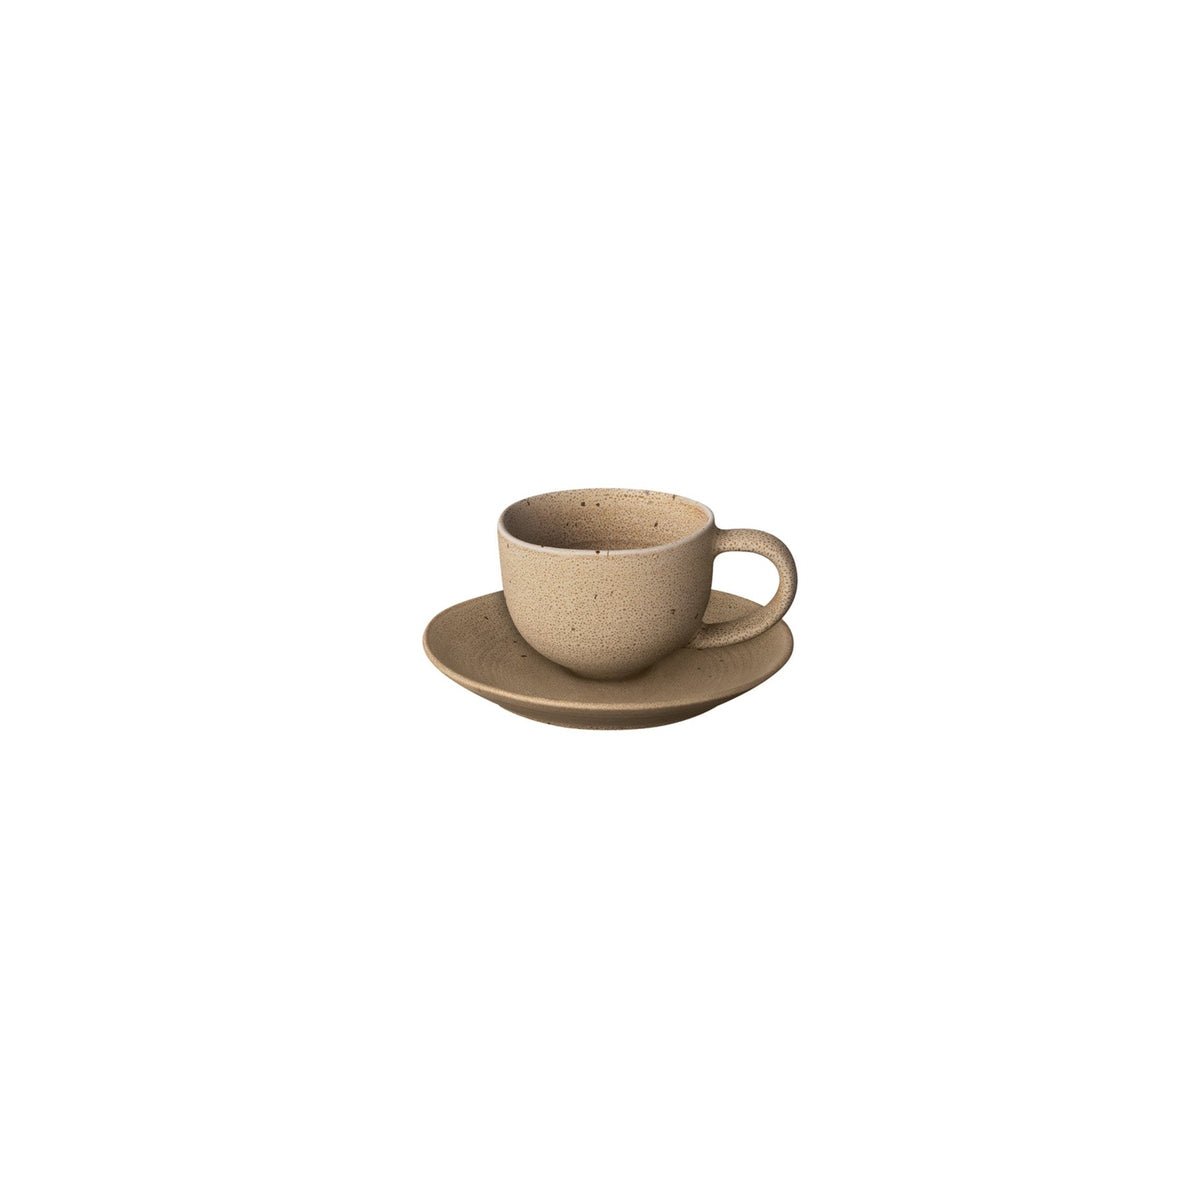 2 Oz / 60 Ml Beige Espresso Cup With Saucer, Modern Minimalist